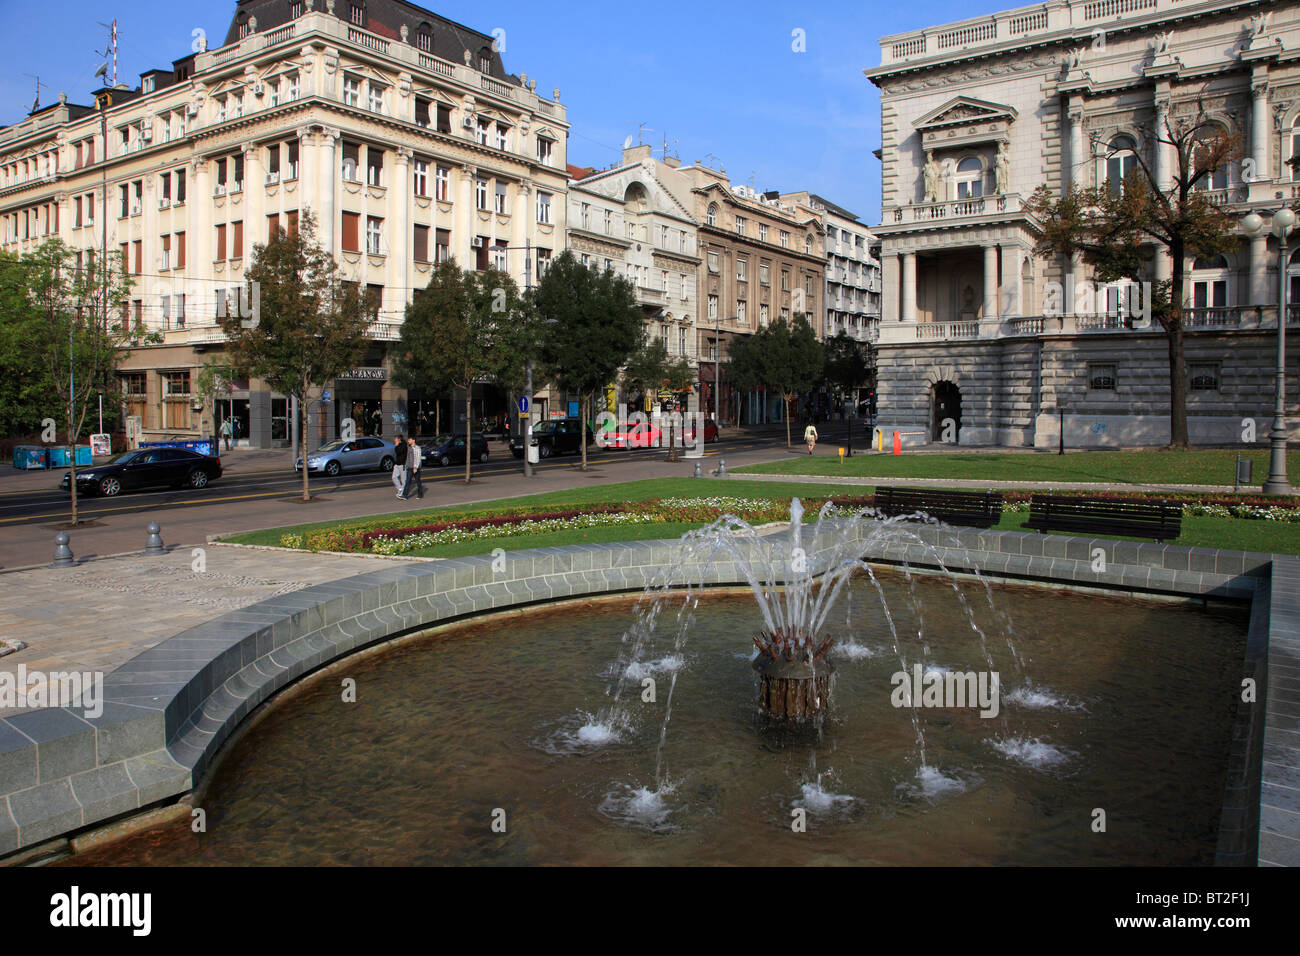 Serbia, Belgrade, Terazije Street, fountain, street scene, architecture, Stock Photo